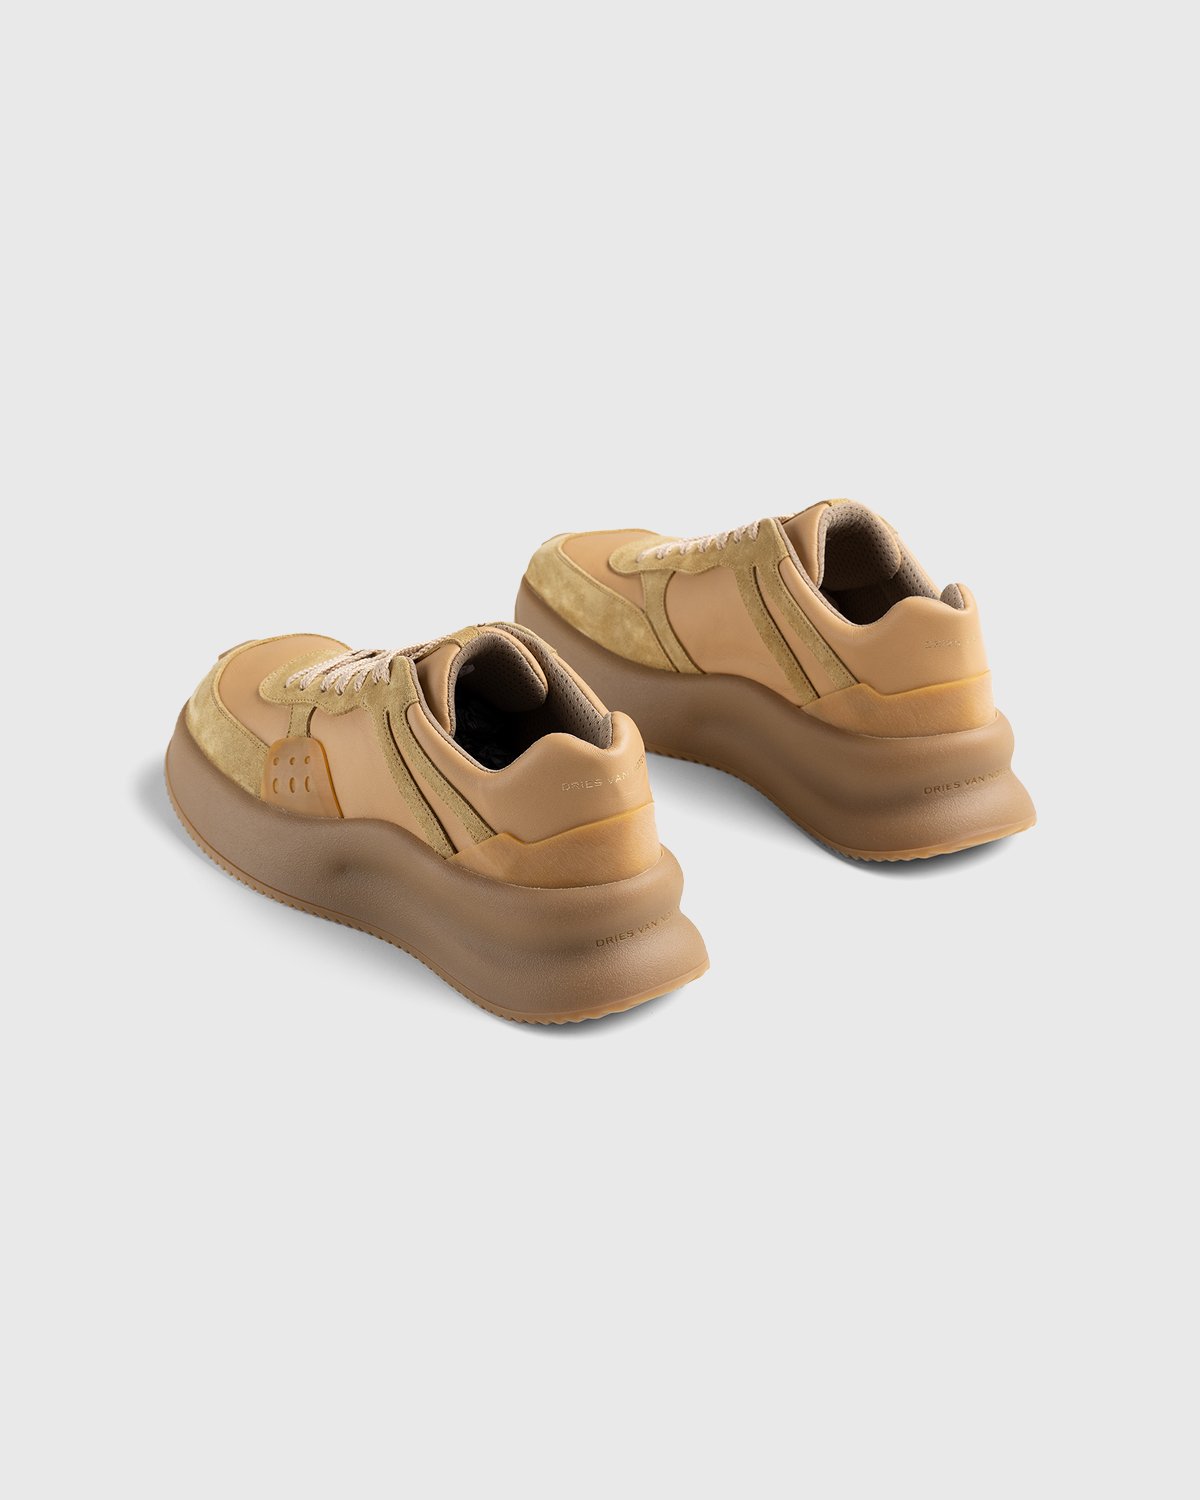 Dries van Noten - Platform Sneaker Camel - Footwear - Brown - Image 3